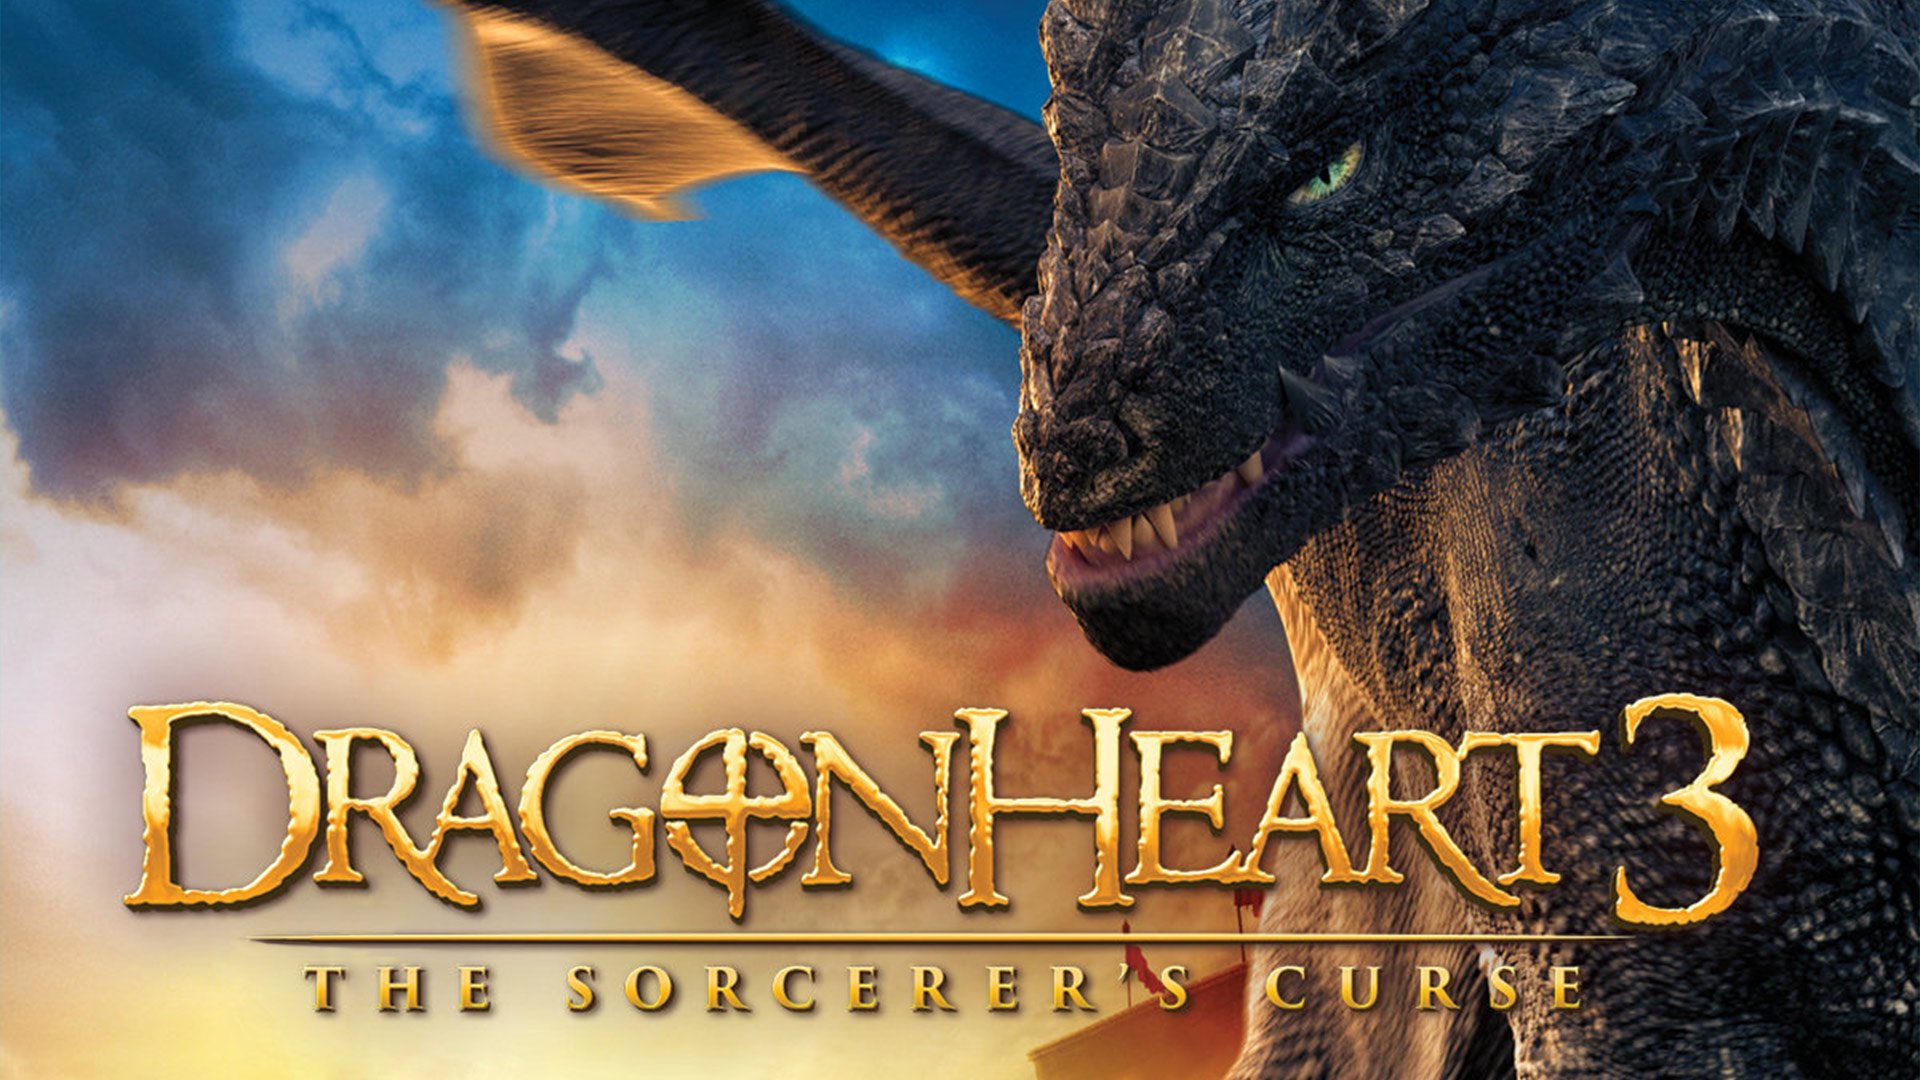 Watch Dragonheart: Battle for the Heartfire